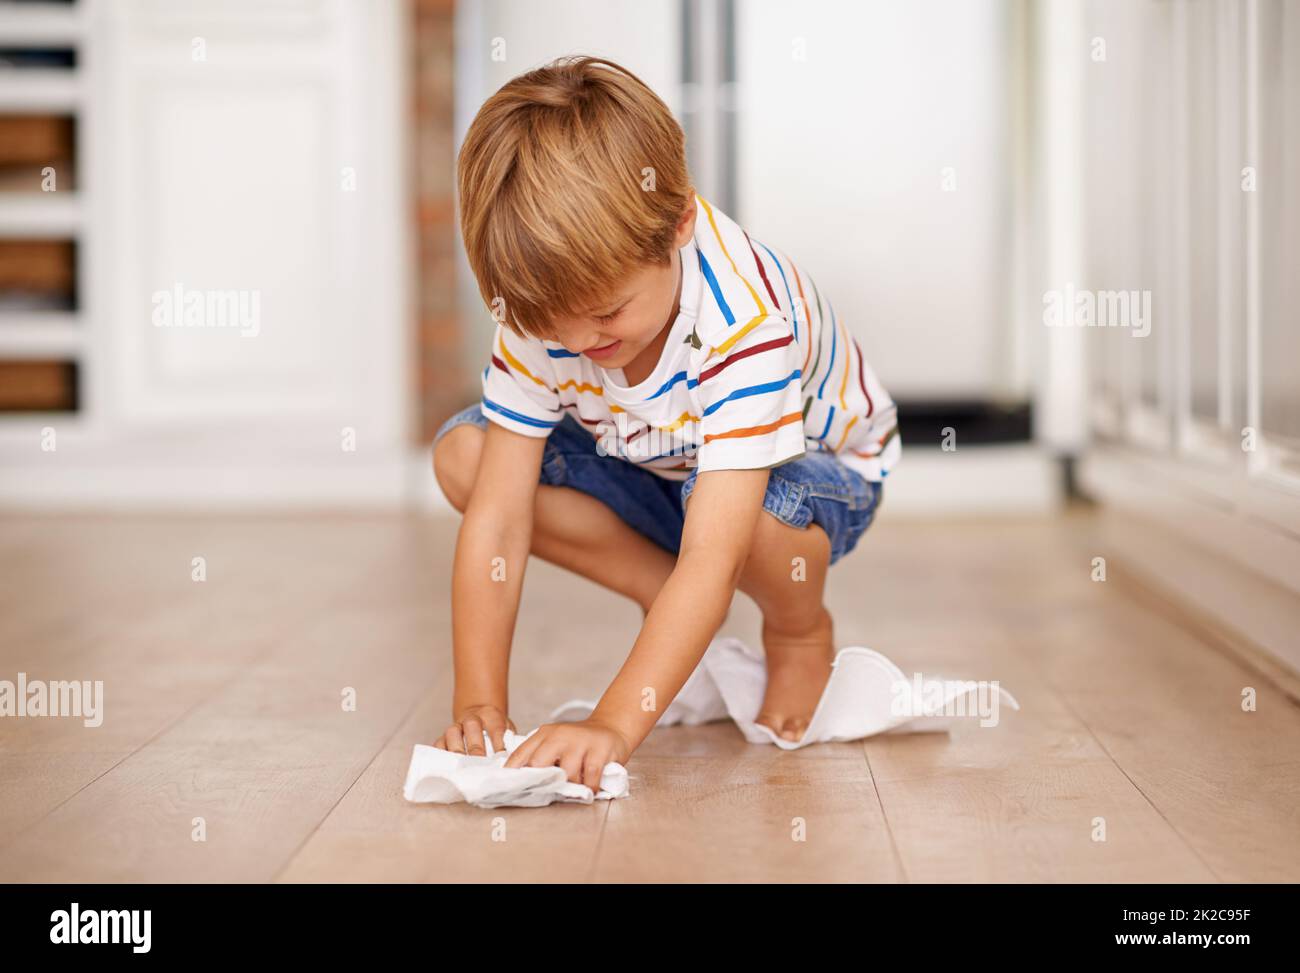 Pulizia dopo se stesso. Scatto di un ragazzino che gioca sul pavimento. Foto Stock